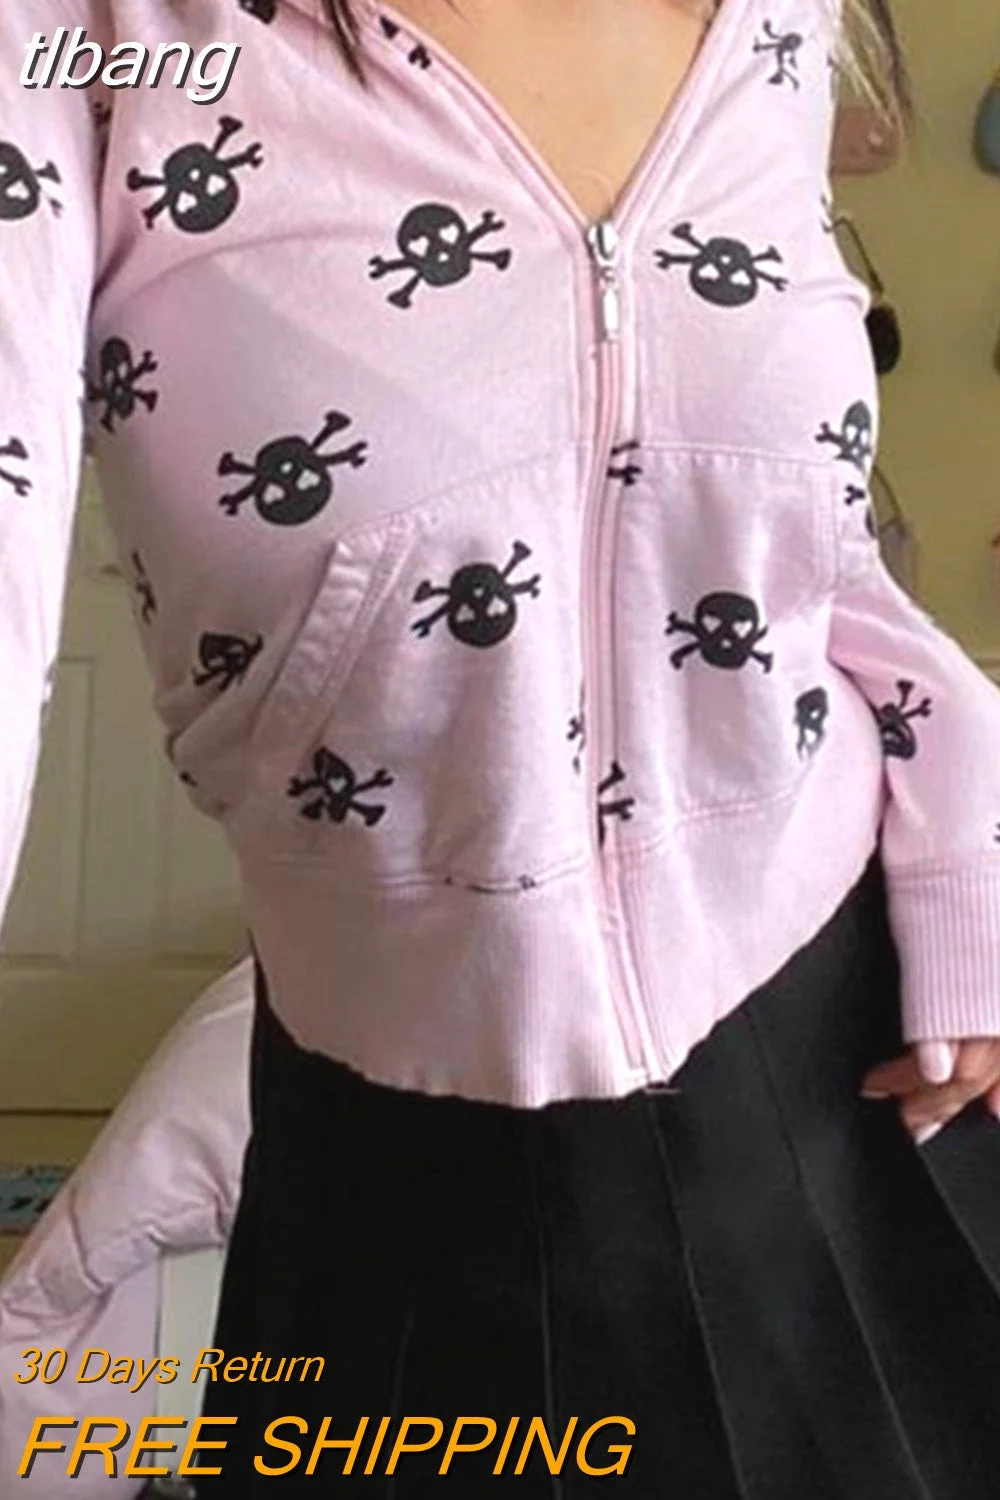 tlbang Skull Sweatshirt Womens Clothing y2k Aesthetic Kawaii Zip Up Long Sleeve Top with Pockets Punk Gothic Hoodie Streetwear